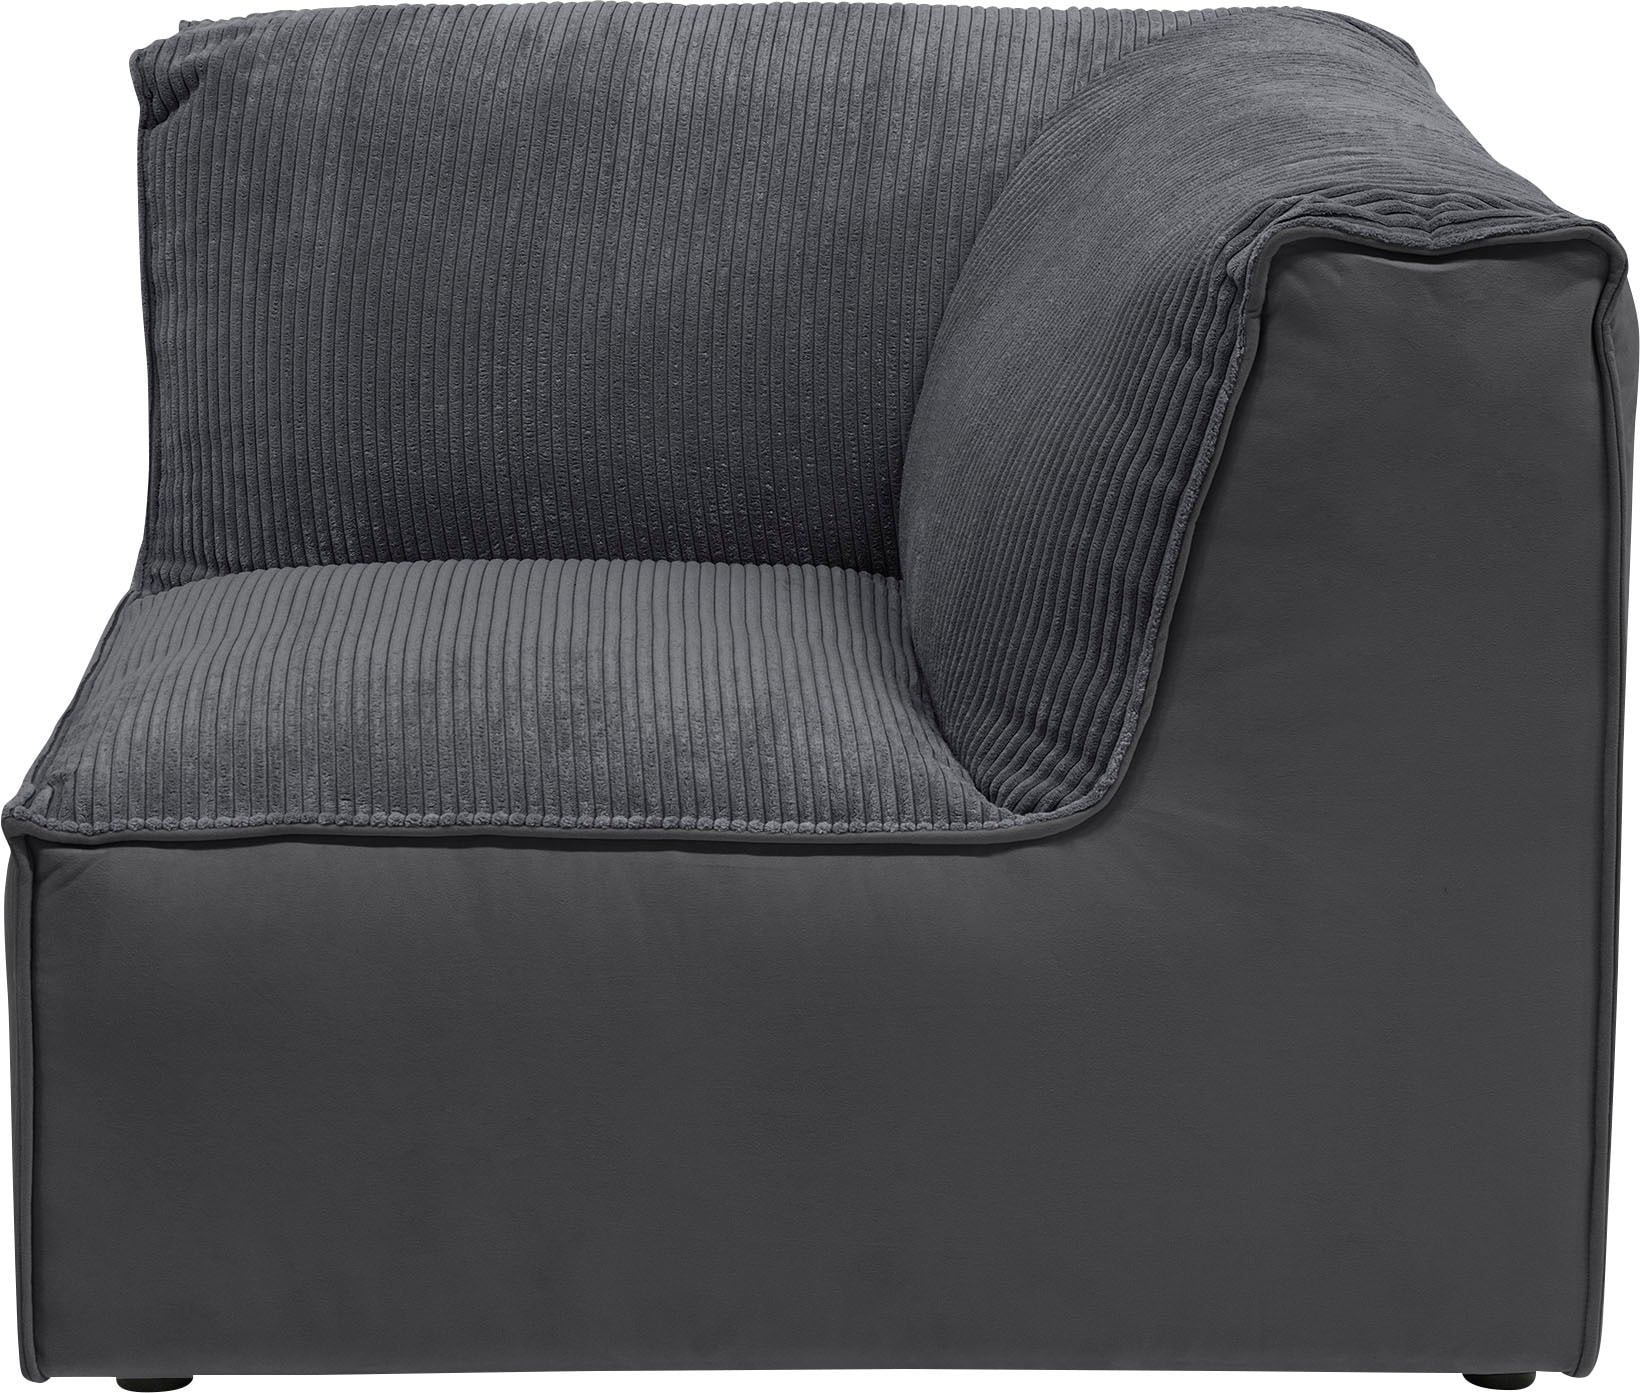 RAUM.ID Sofa-Eckelement »Modulid«, (1 St.), als Modul oder separat verwendbar, in Cord